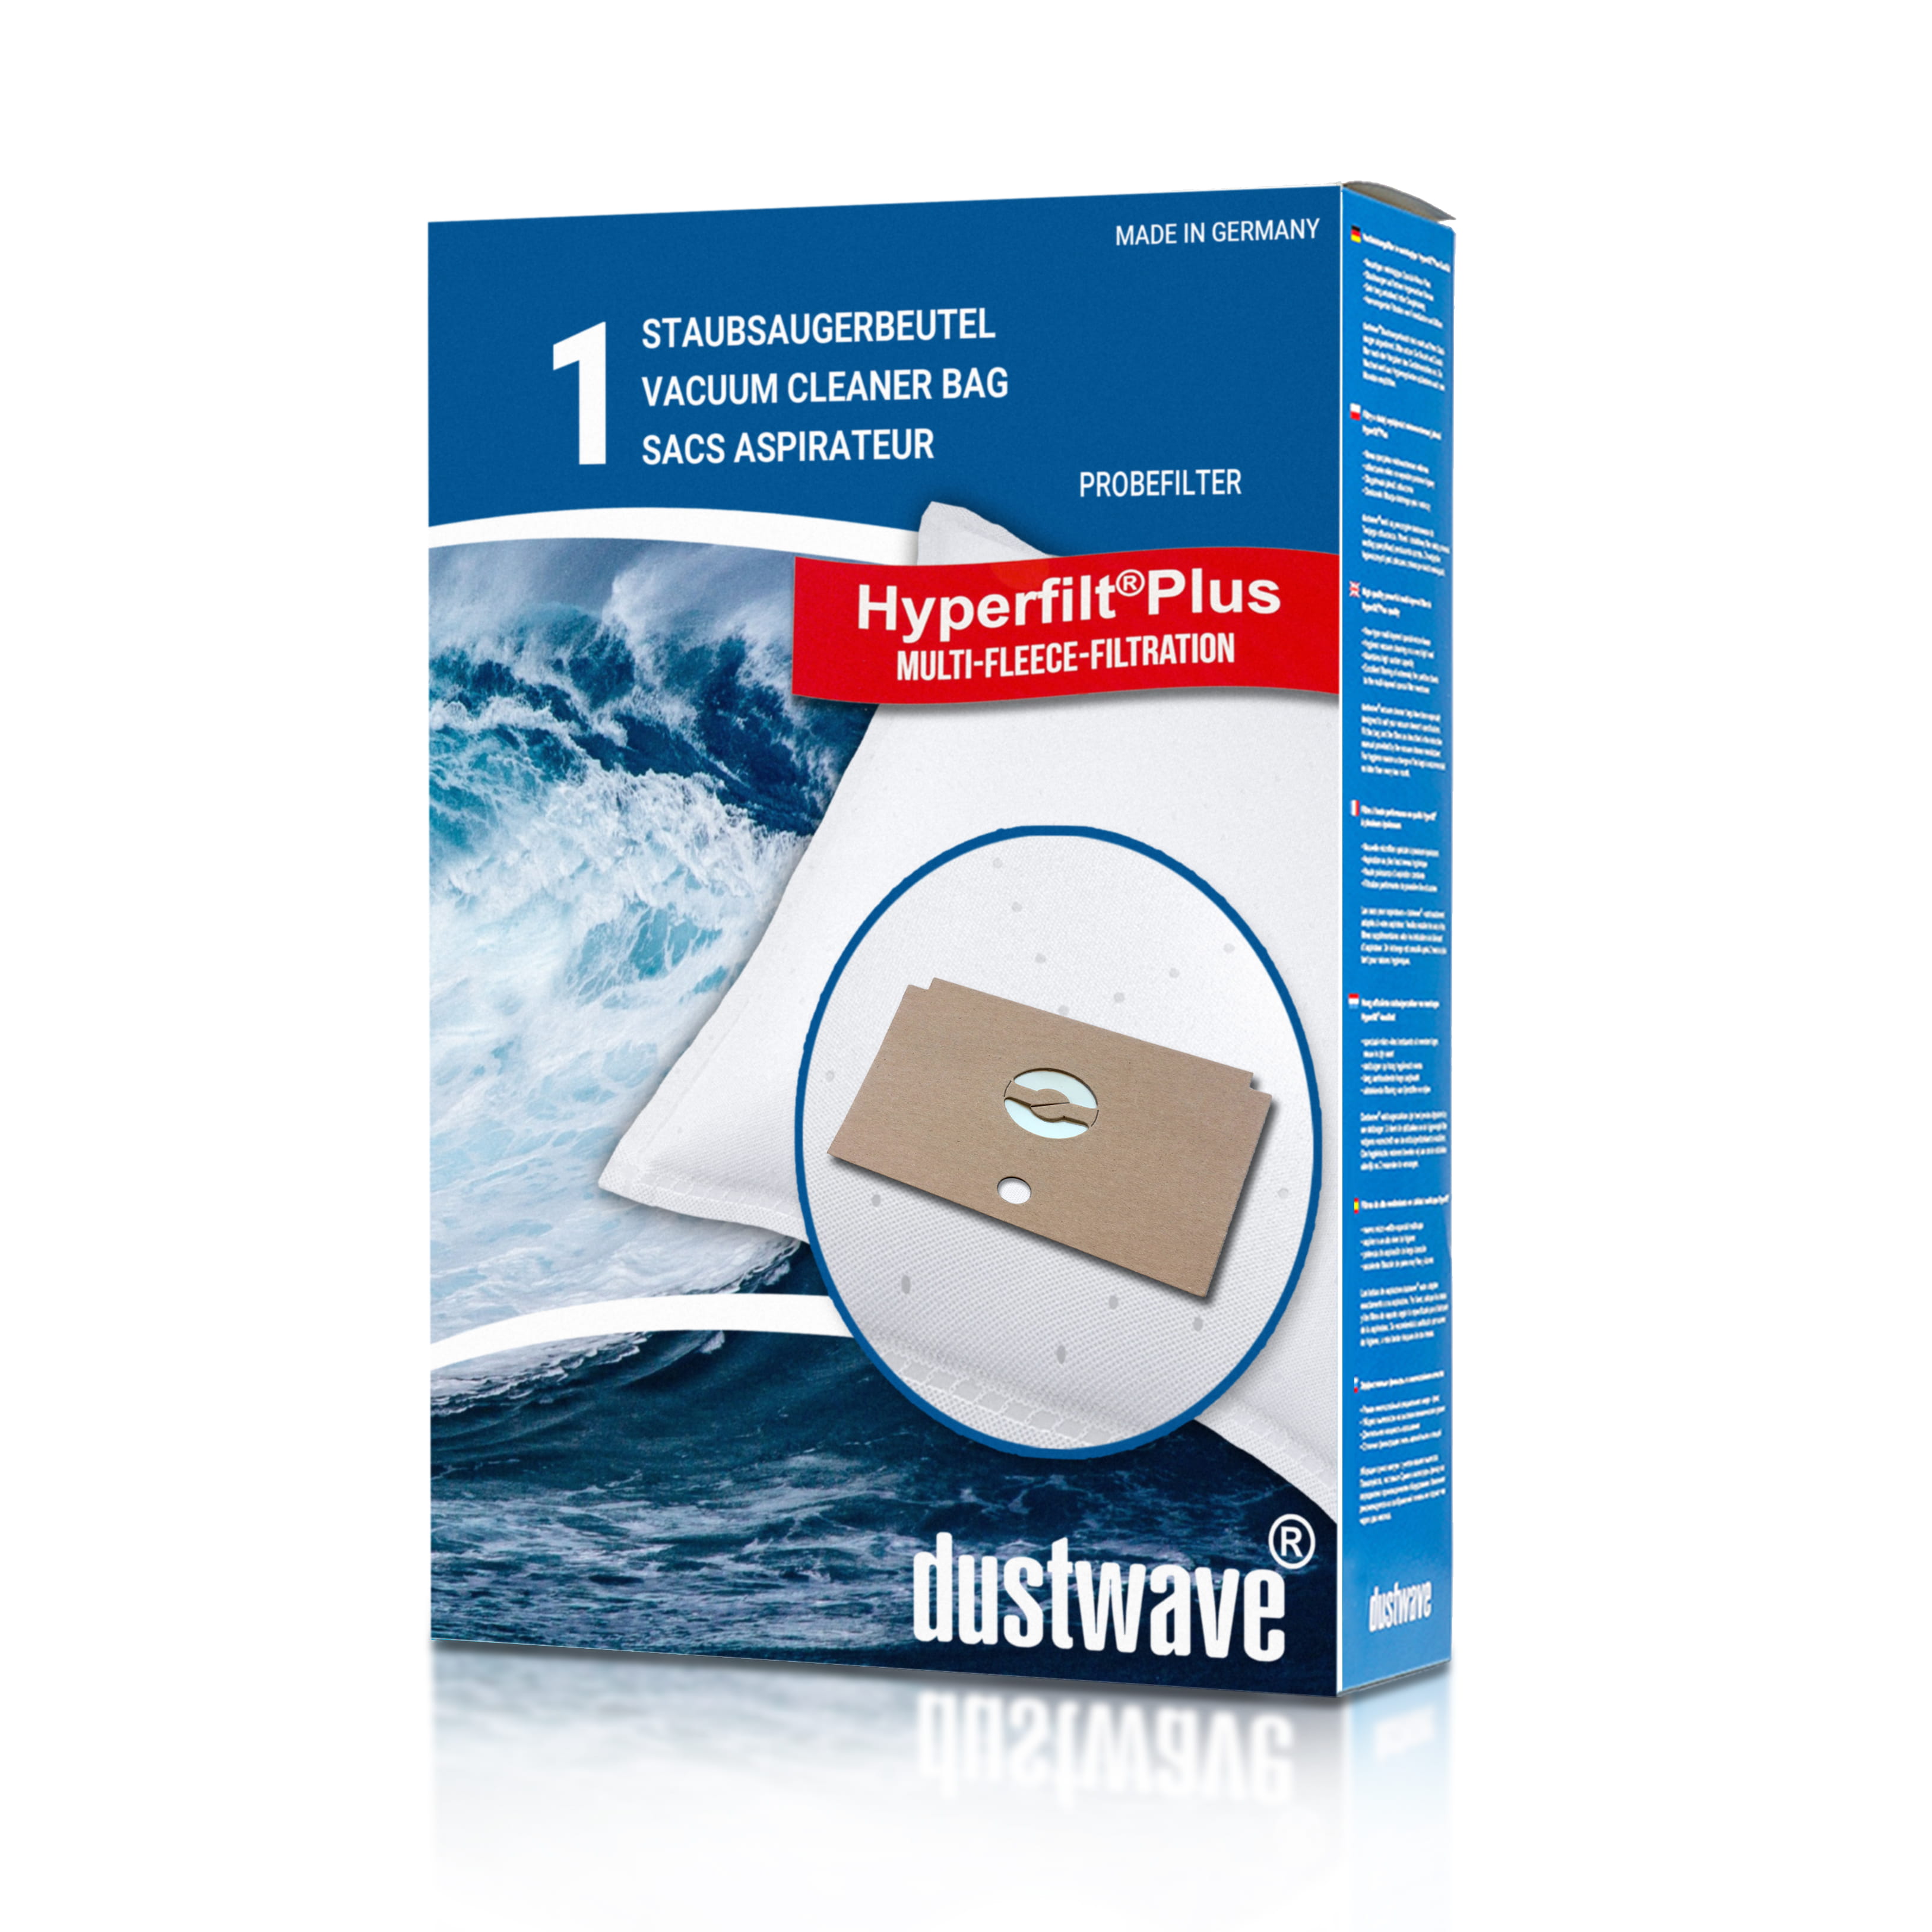 Dustwave® 1 Staubsaugerbeutel für Baur 340.689 / 340-689 - hocheffizient mit Hygieneverschluss - Made in Germany